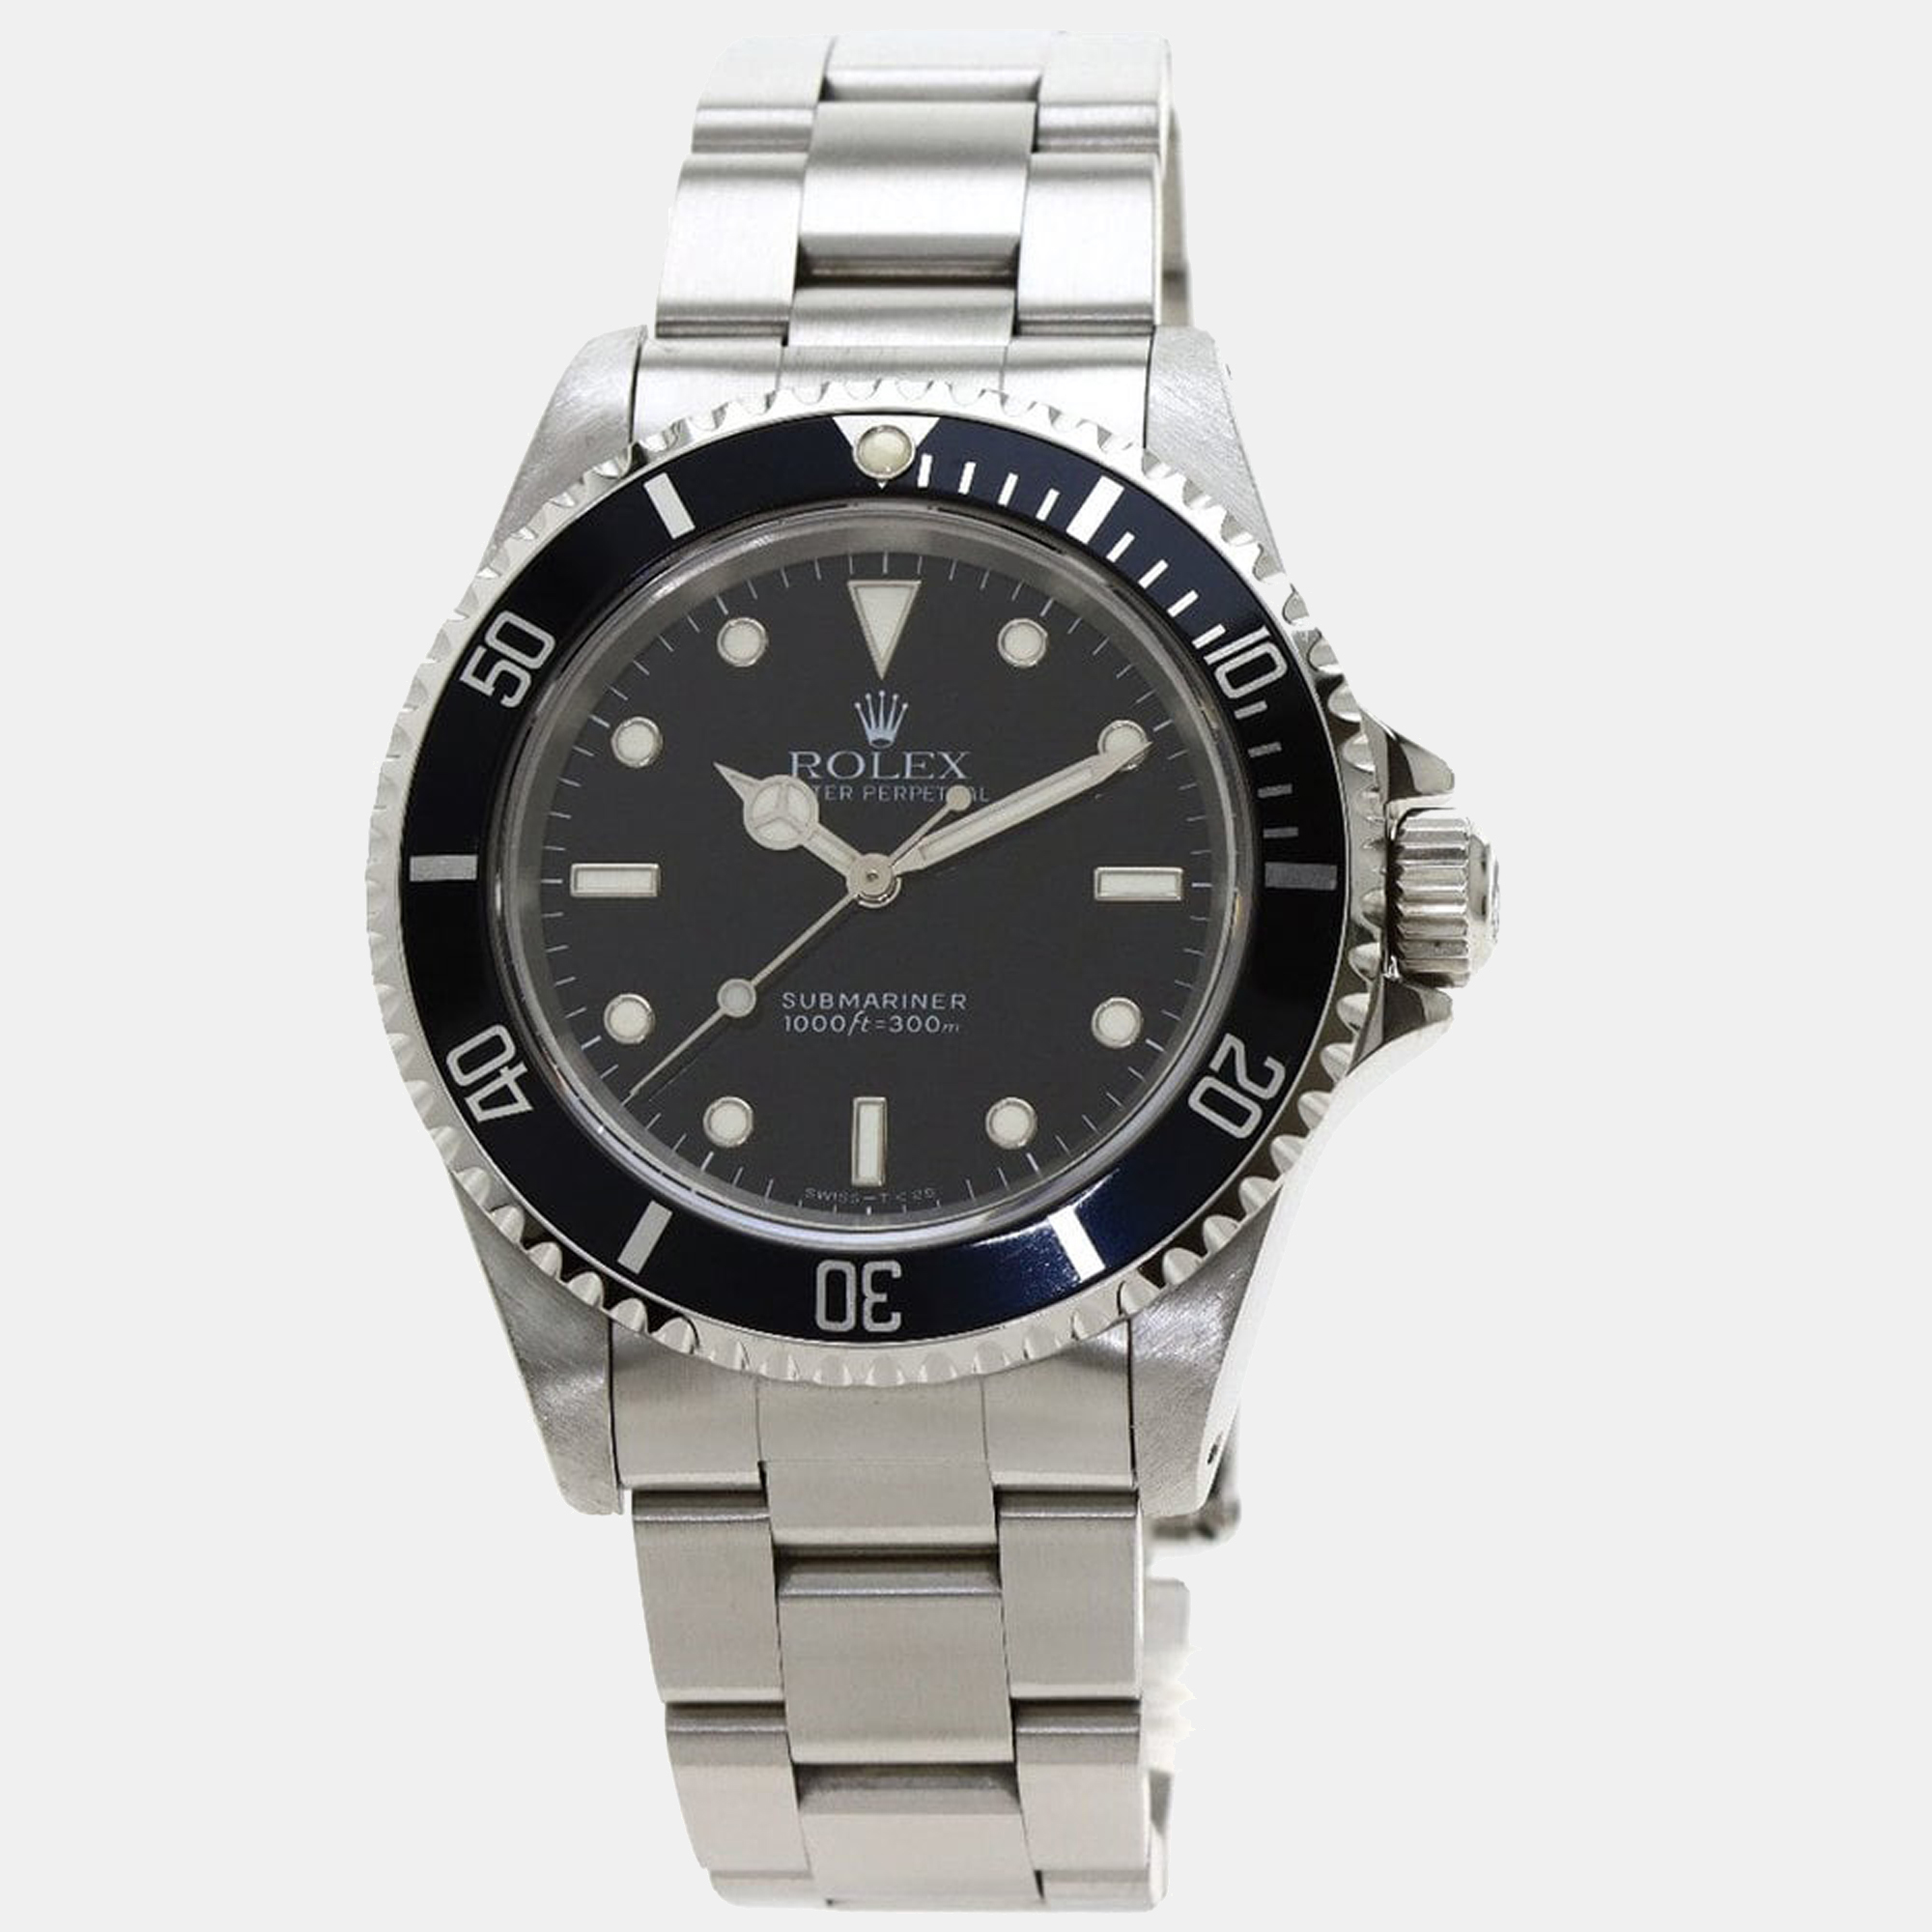 Rolex Black Stainless Steel Submariner 14060 Men's Wristwatch 40 Mm